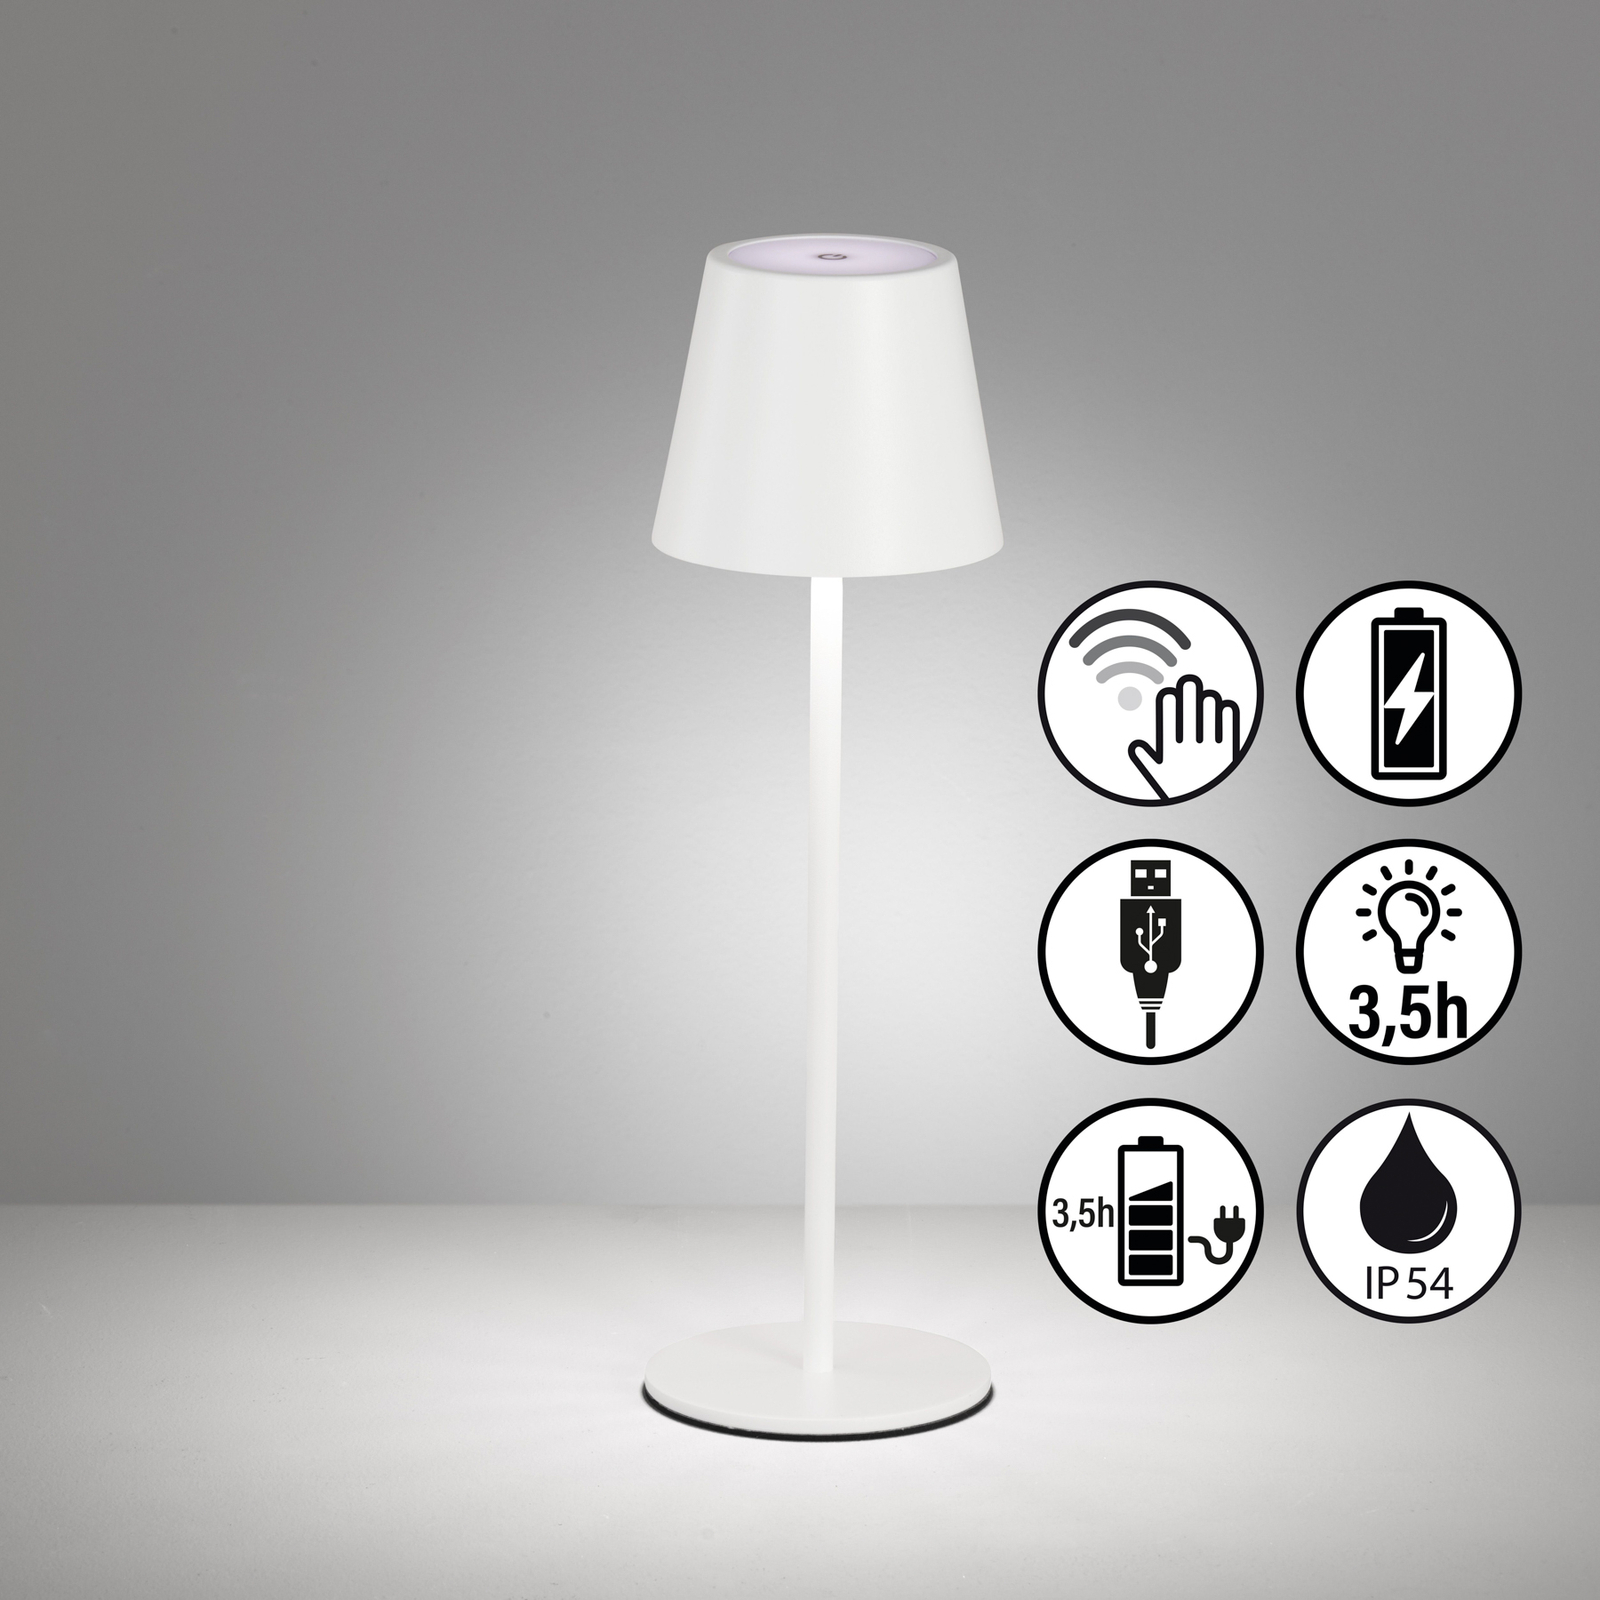 Lampe de table LED rechargeable Viletto, blanc, IP54